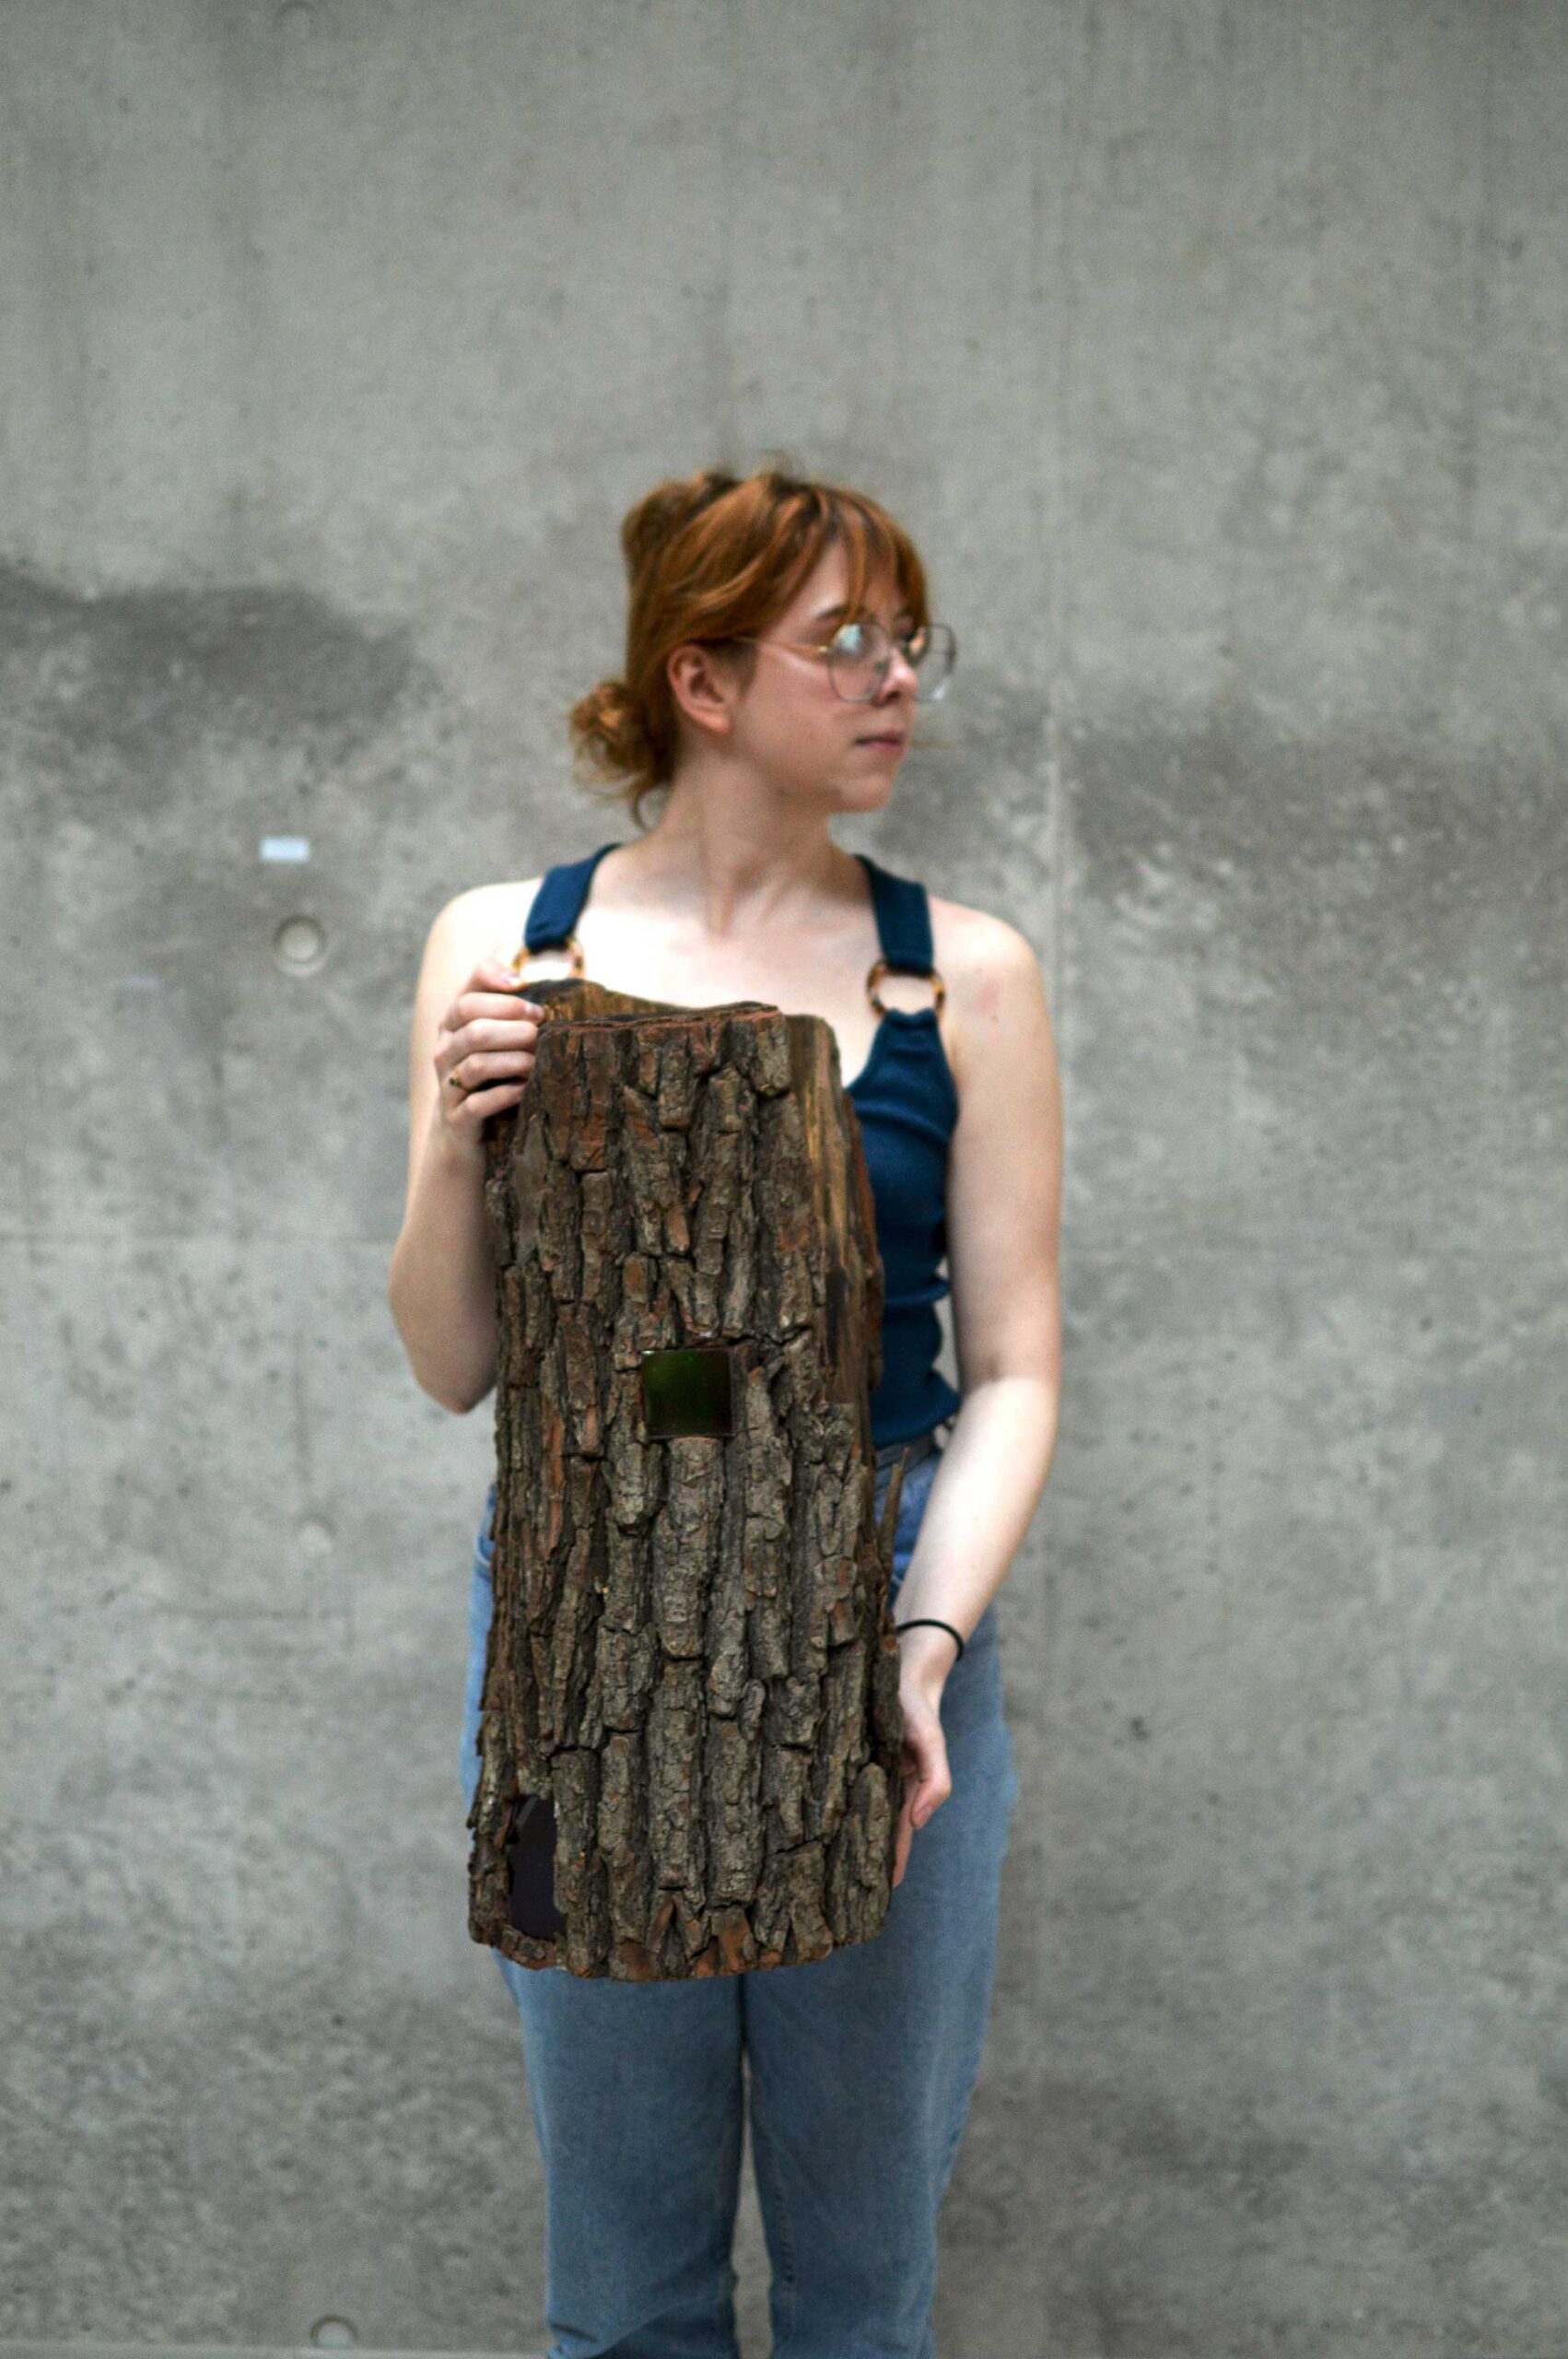 Fotografia młodej kobiety w okularach na szarym tle.Kobieta - z twarzą zwróconą w jedną stronę - w ujęciu od kolan w górę. W dłoniach trzyma pień drzewa. W tle jest betonowa ściana